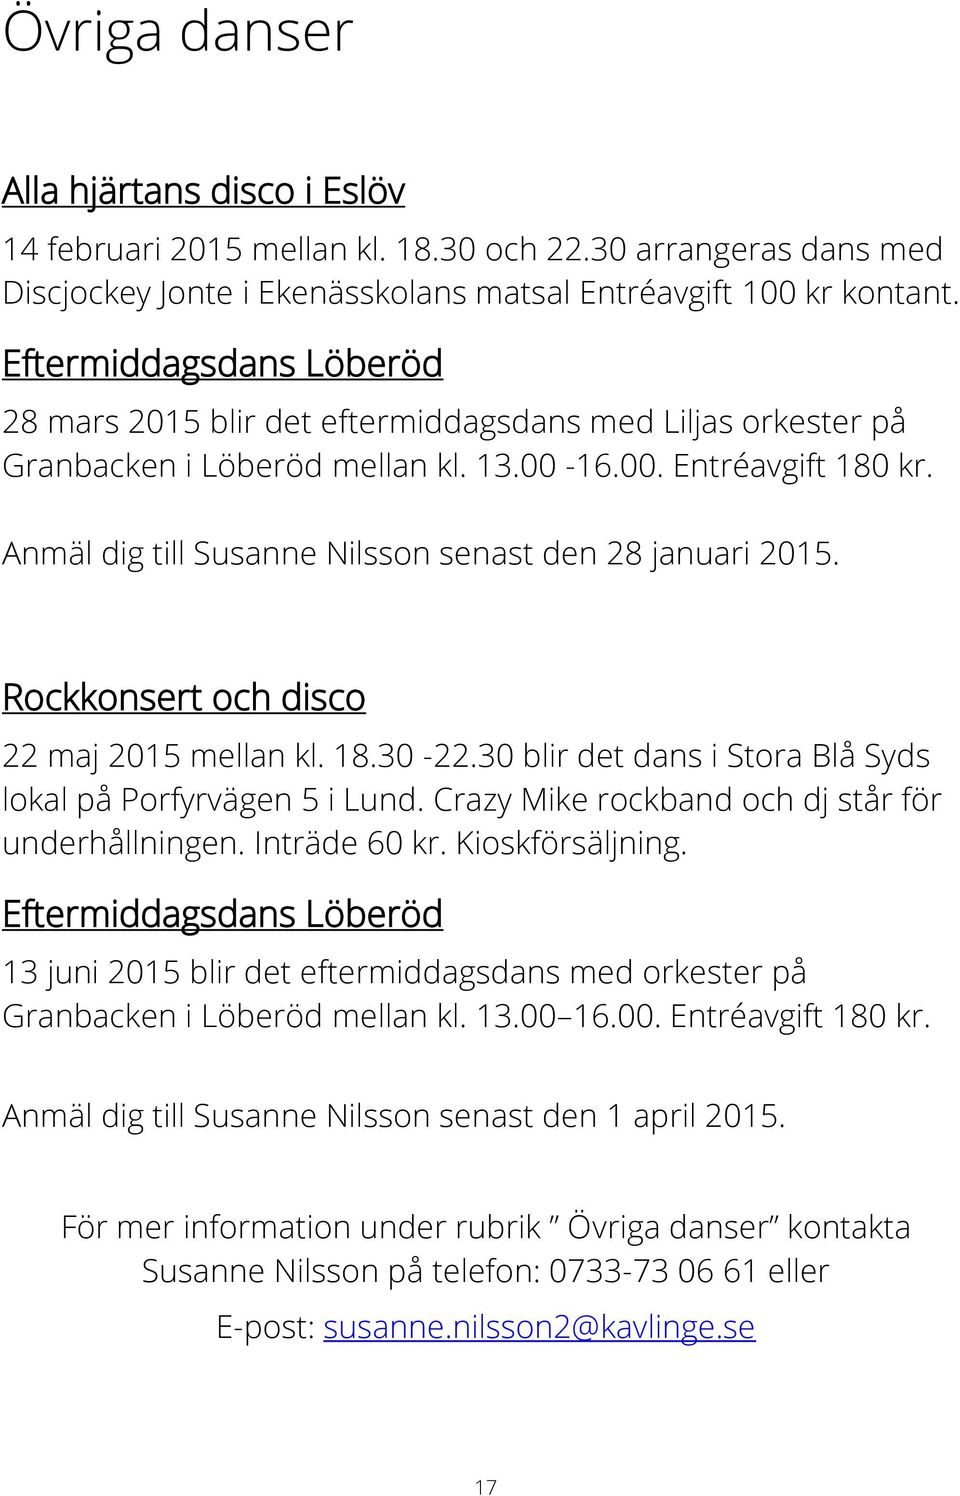 Anmäl dig till Susanne Nilsson senast den 28 januari 2015. Rockkonsert och disco 22 maj 2015 mellan kl. 18.30-22.30 blir det dans i Stora Blå Syds lokal på Porfyrvägen 5 i Lund.